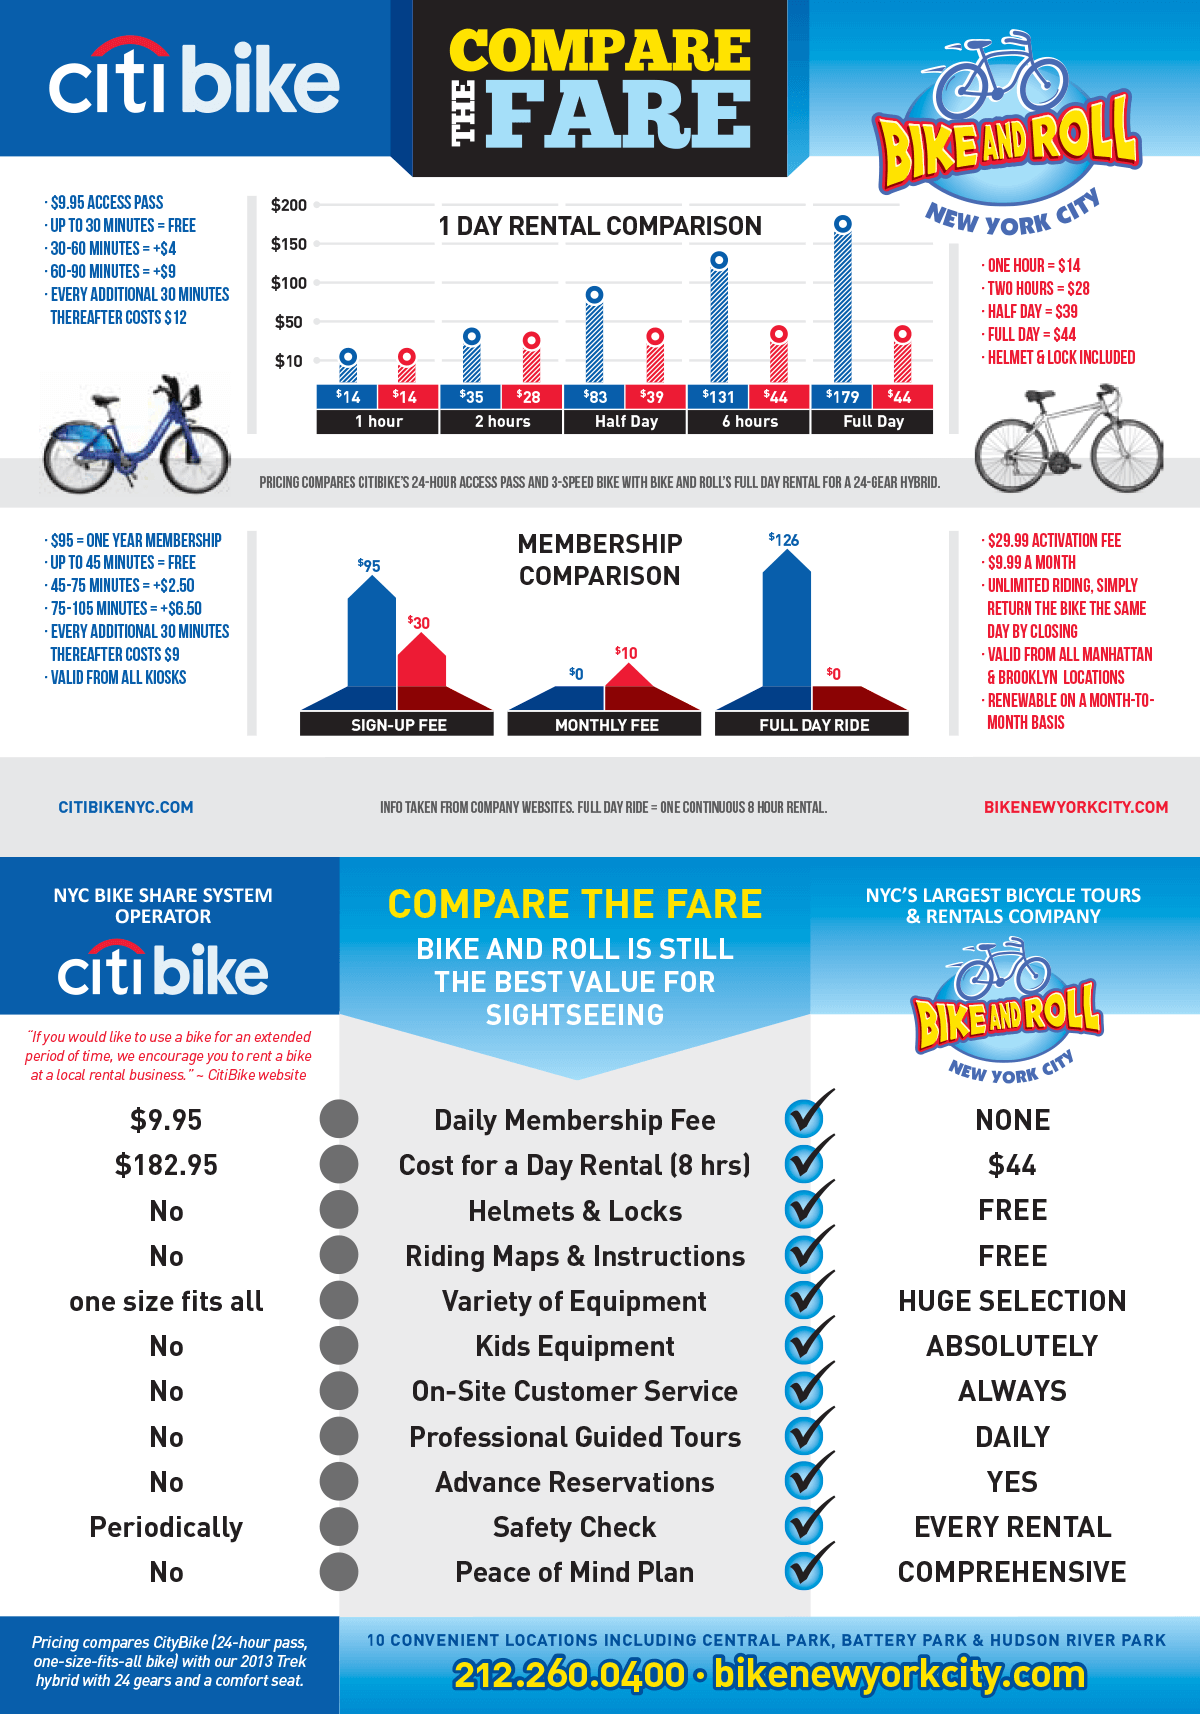 Bike and Roll vs Citibike